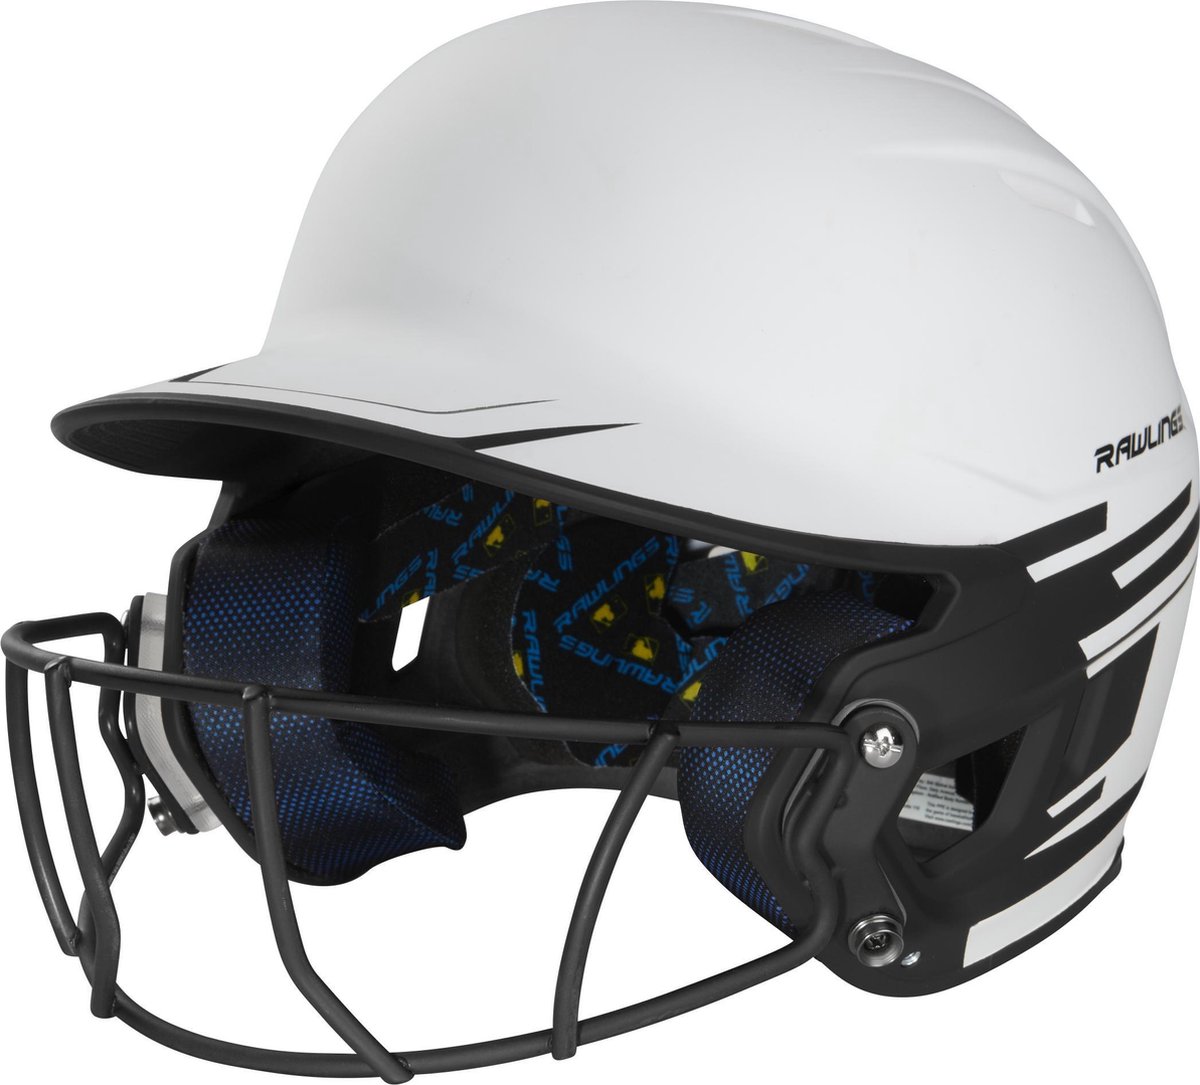 Rawlings MSB13S Mach Ice Softball Helmet w/Mask Color Black